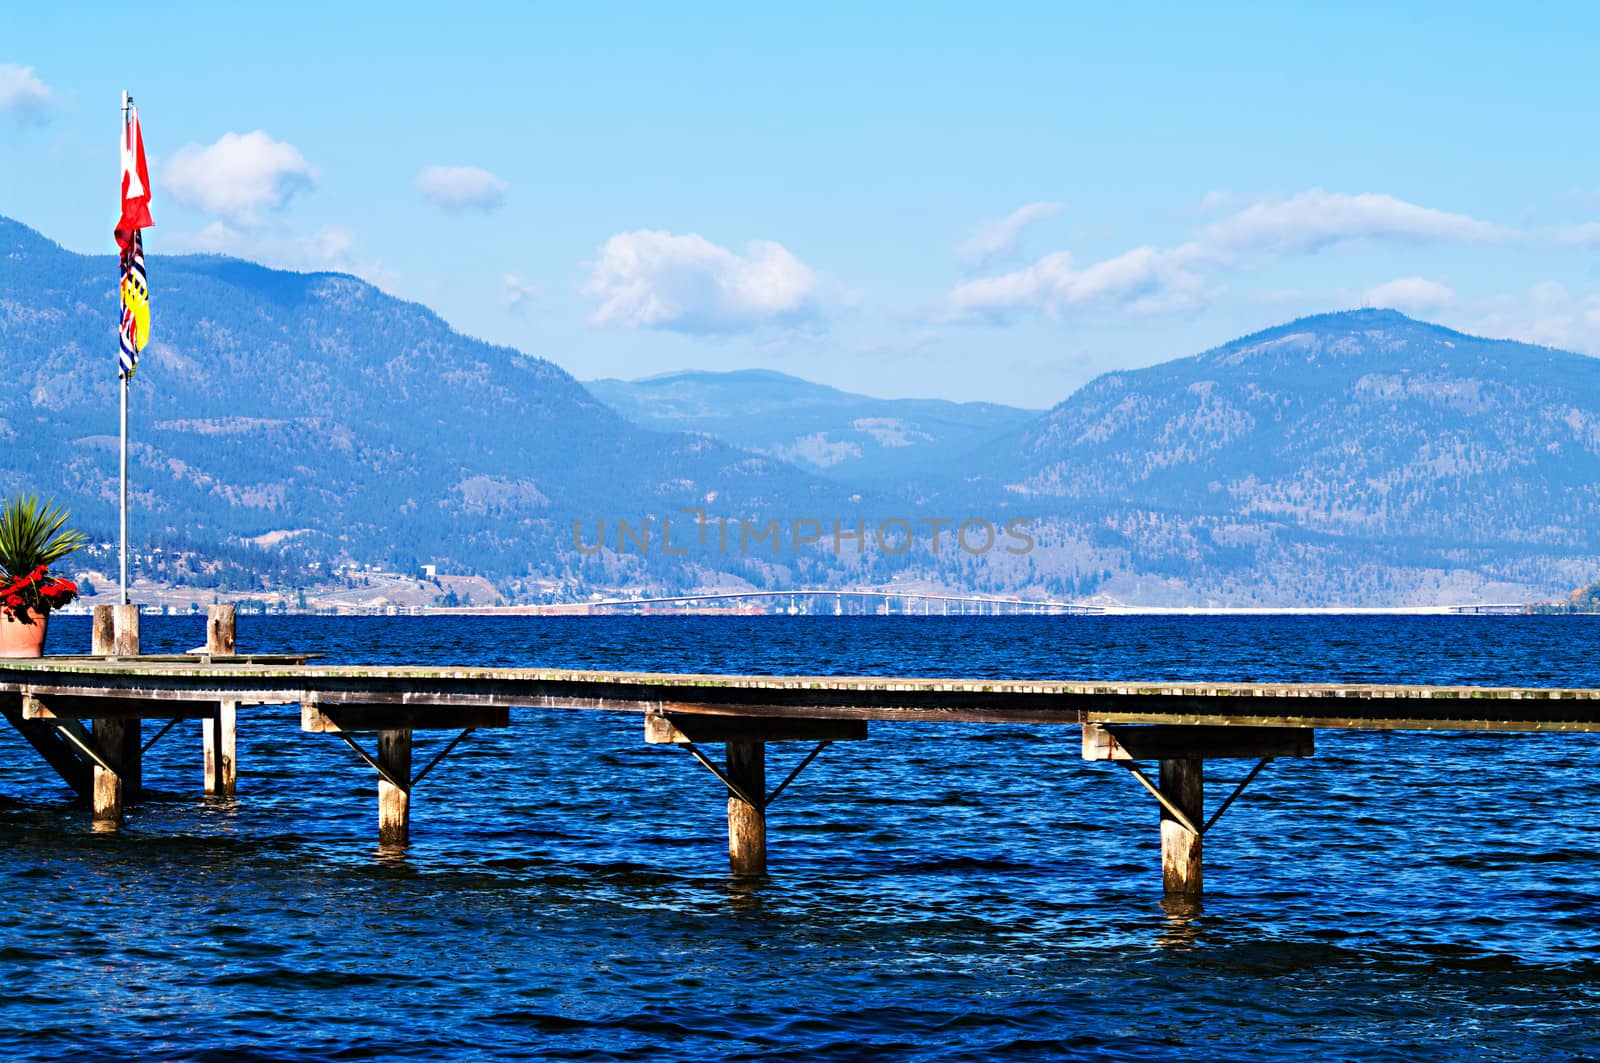 Bridge across Okanagan Lake with Flags by edcorey